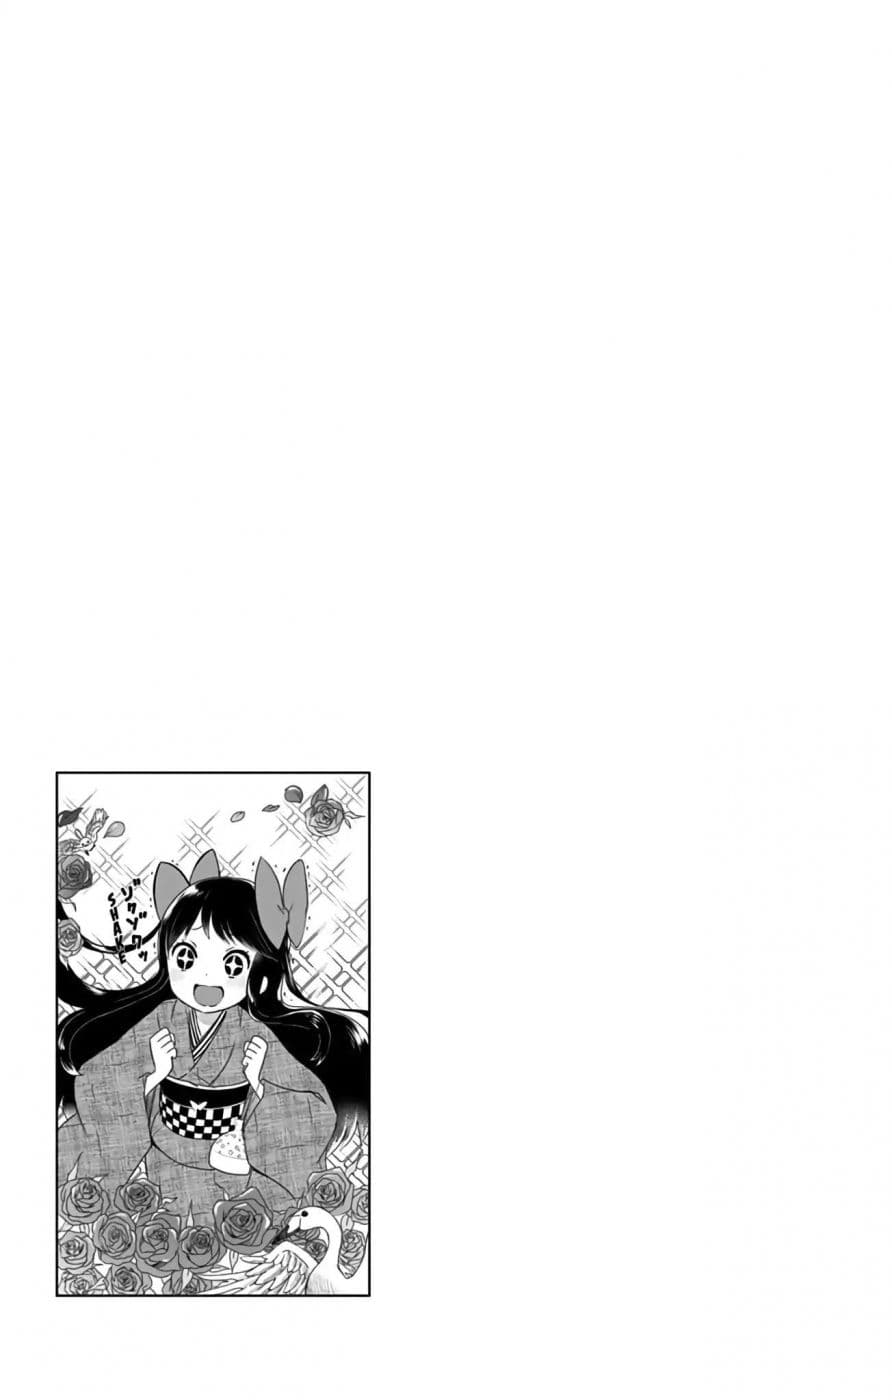 Shouwa Otome Otogibanashi เรื่องเล่าของสาวน้อย ยุคโชวะ ตอนที่ 4 (21)